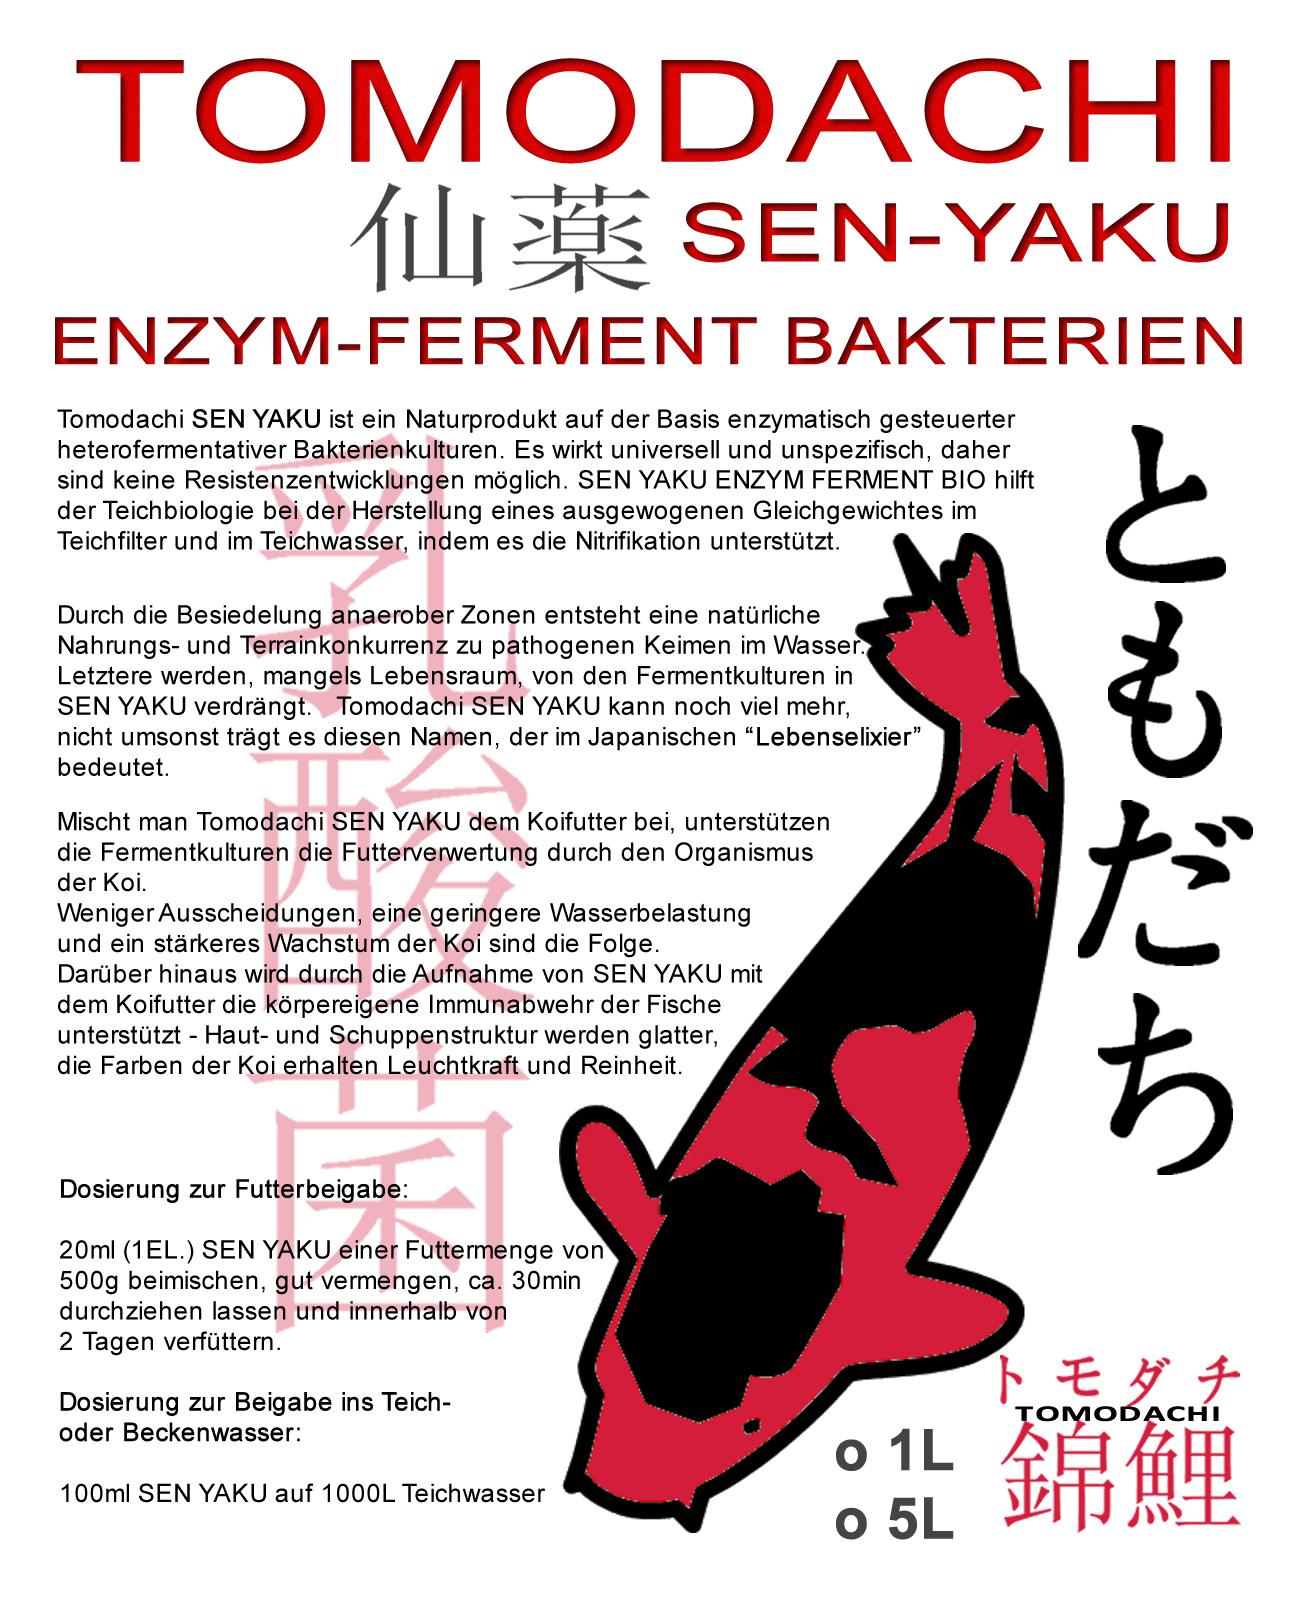 Sen-Yaku ist das japanische Wort für Lebenselixier, - ein Wunder bewirkender Trank, der auf natürlicher, biologischer Basis Wasserqualität im Teich und die Vitalität der Koi nachhaltig unterstützt.